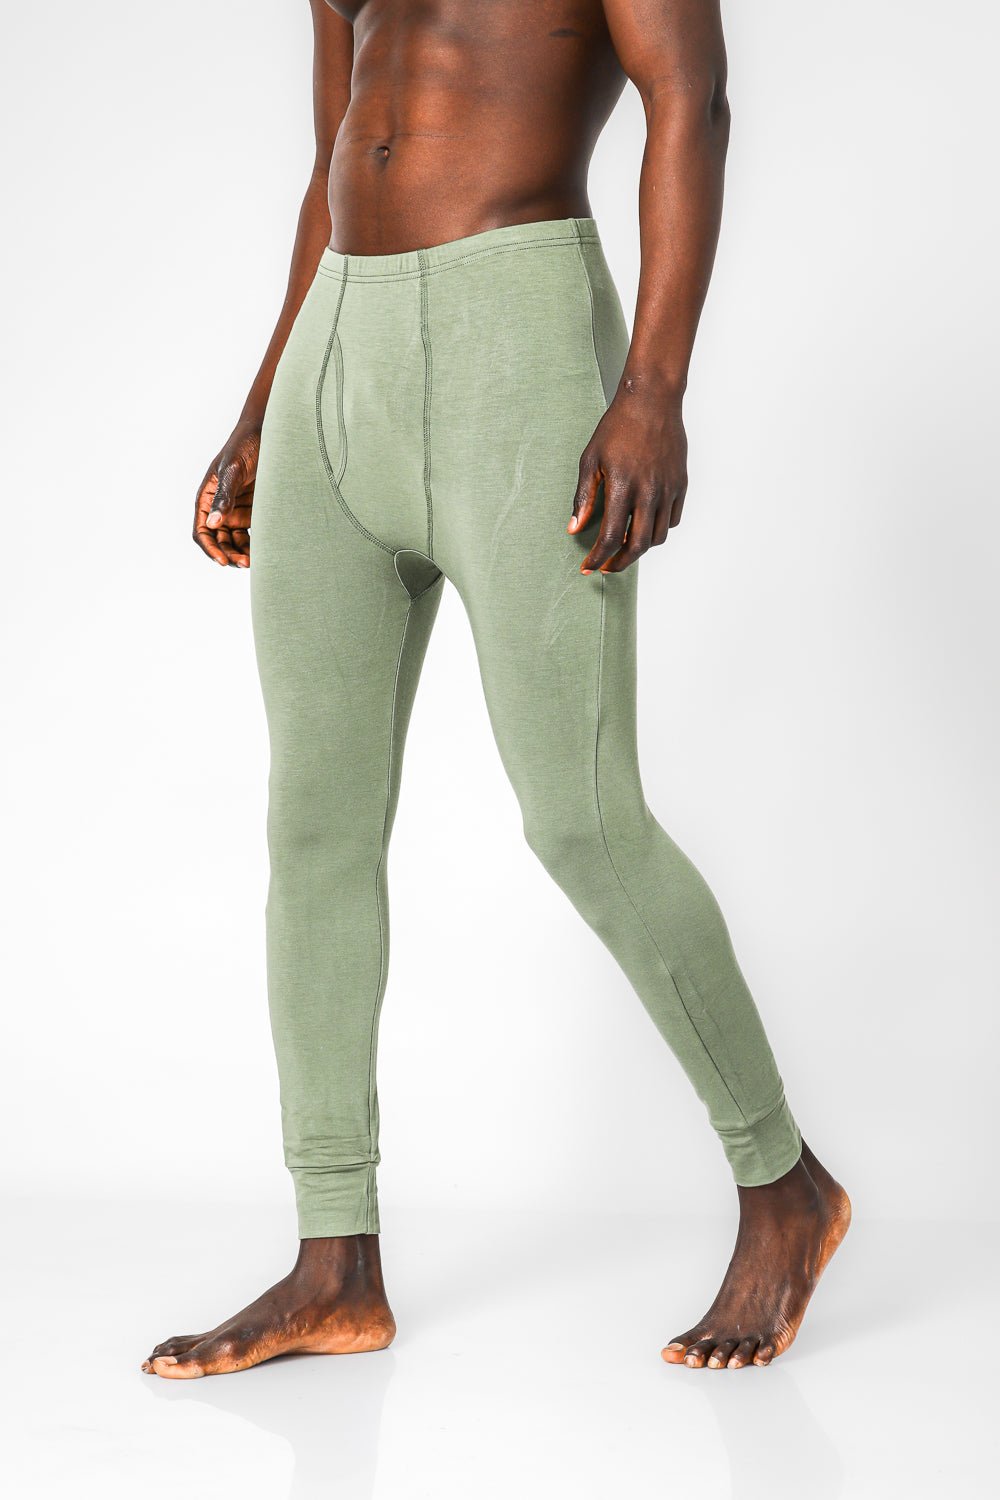 DELTA - מכנס גברים תרמי בצבע ירוק - MASHBIR//365